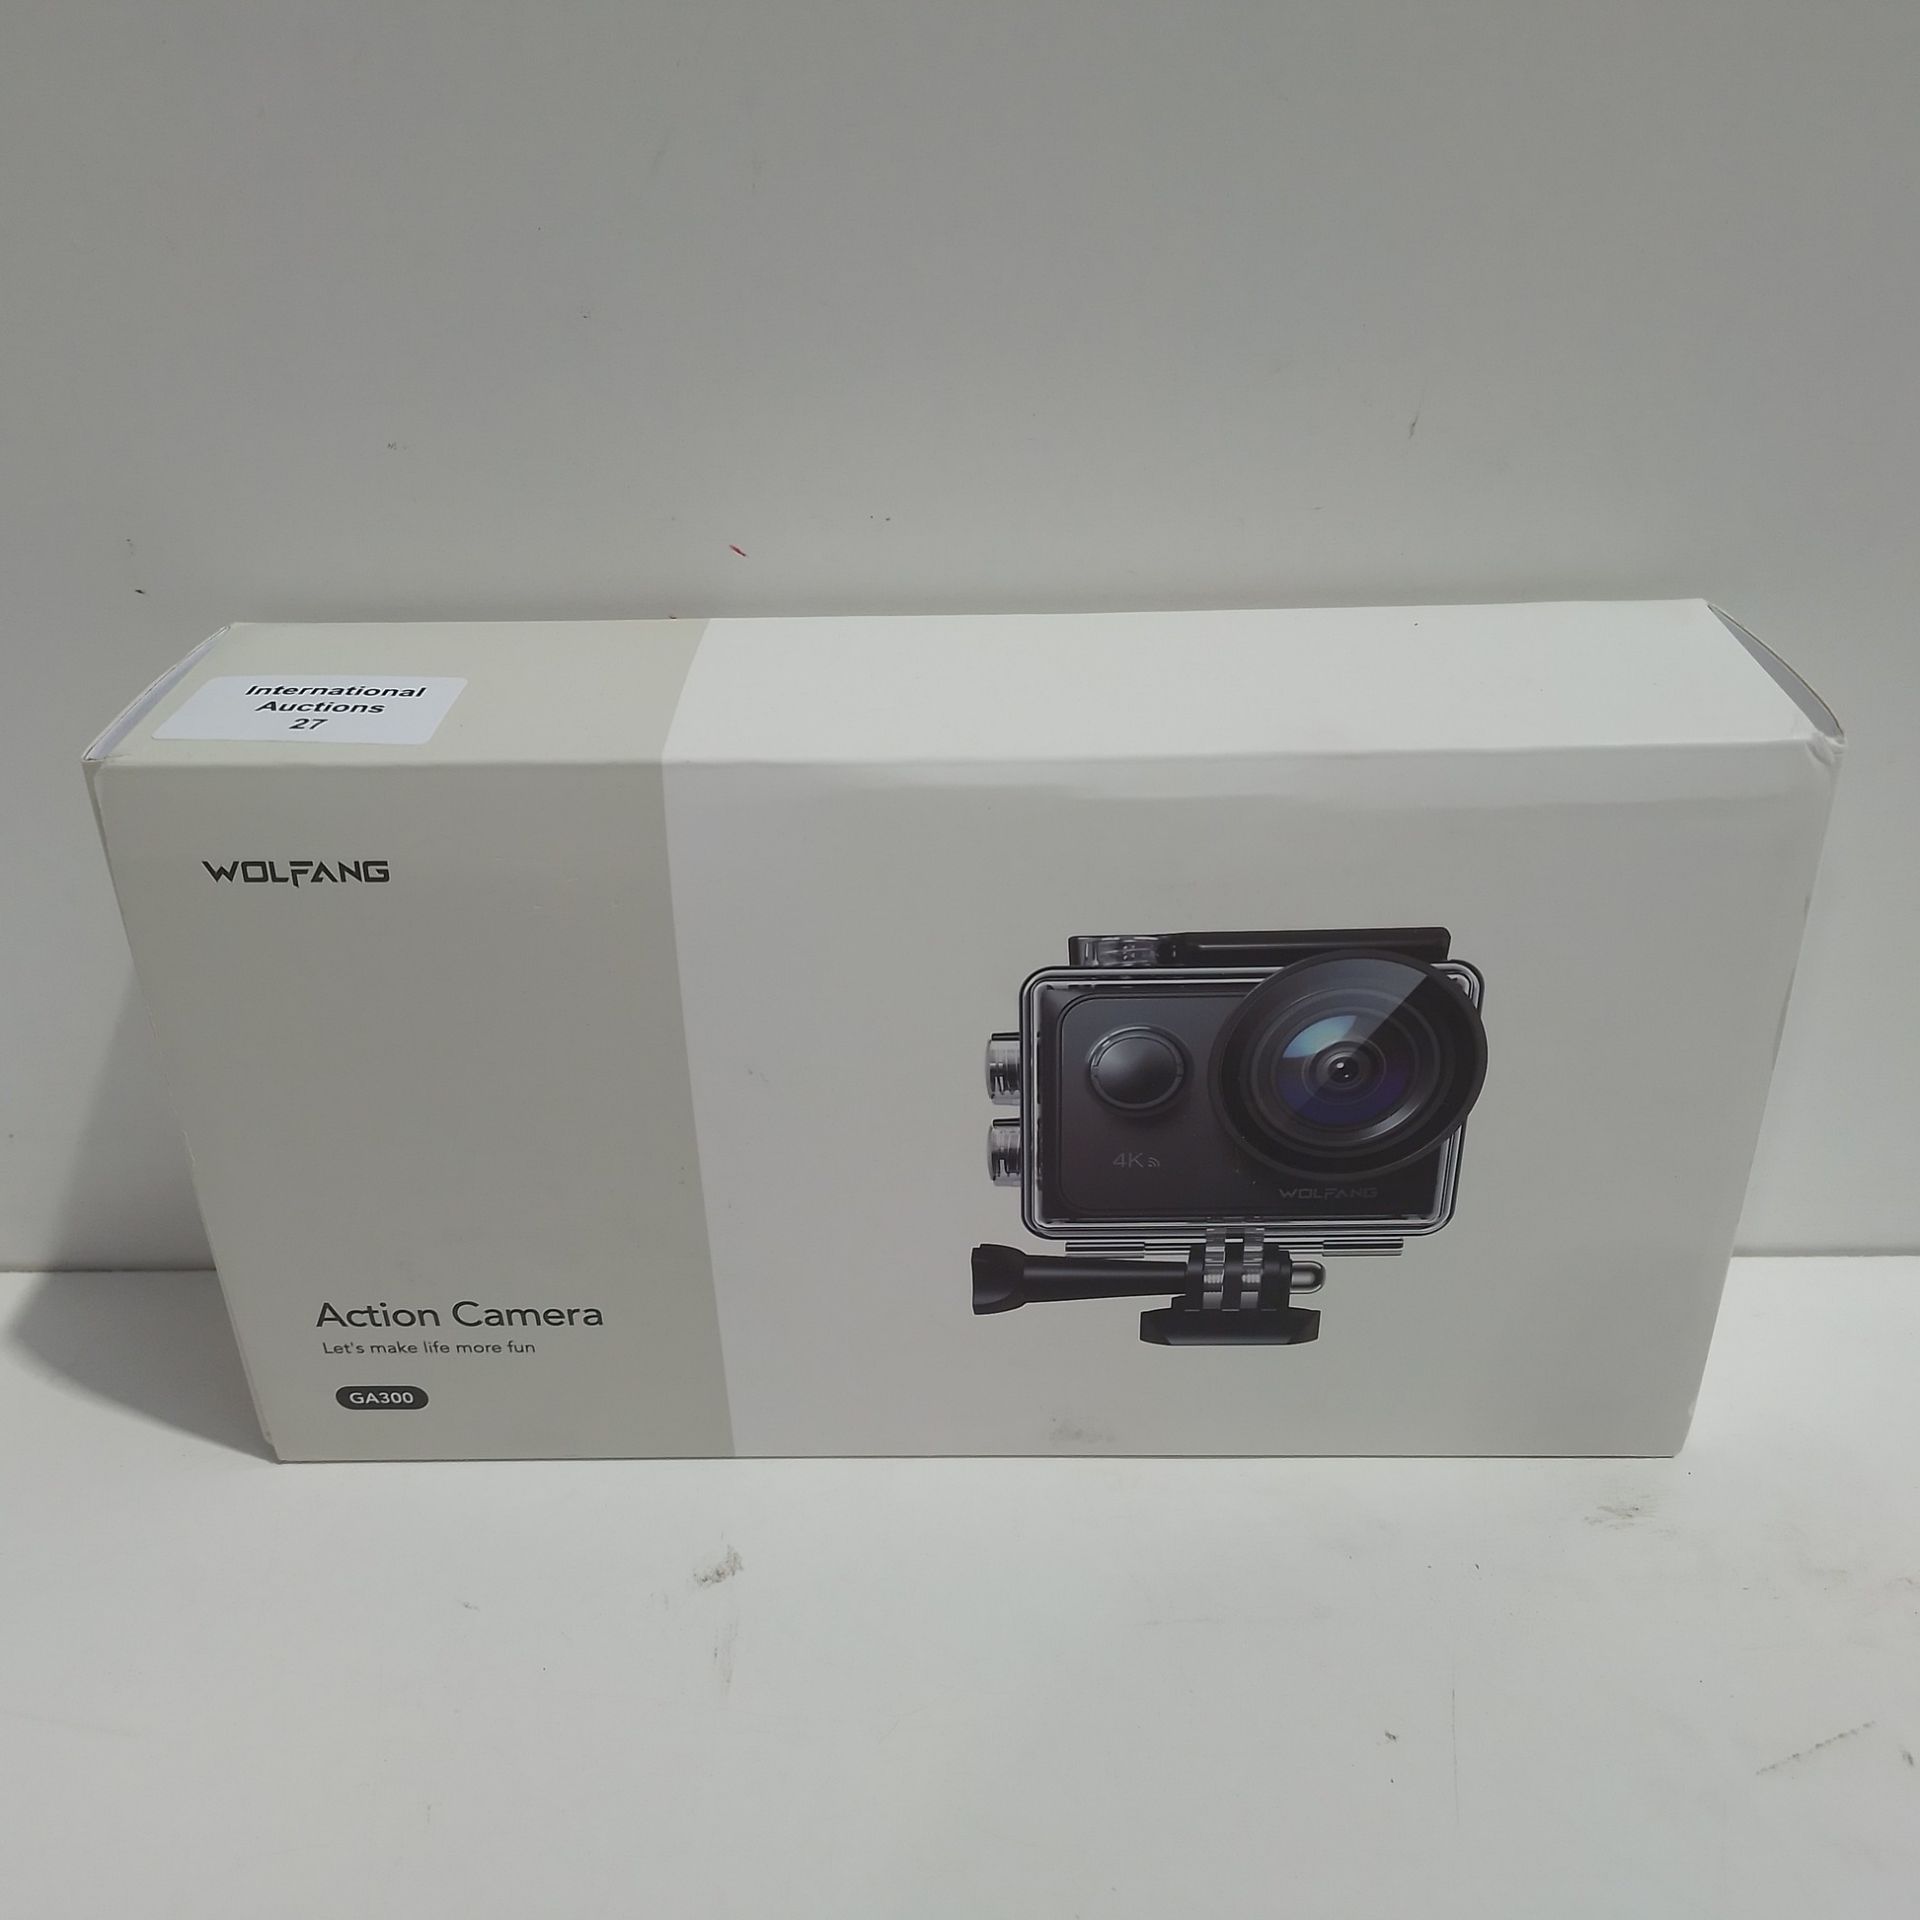 RRP £97.11 WOLFANG Action Camera 4K 60FPS 24MP GA300 - Image 2 of 2